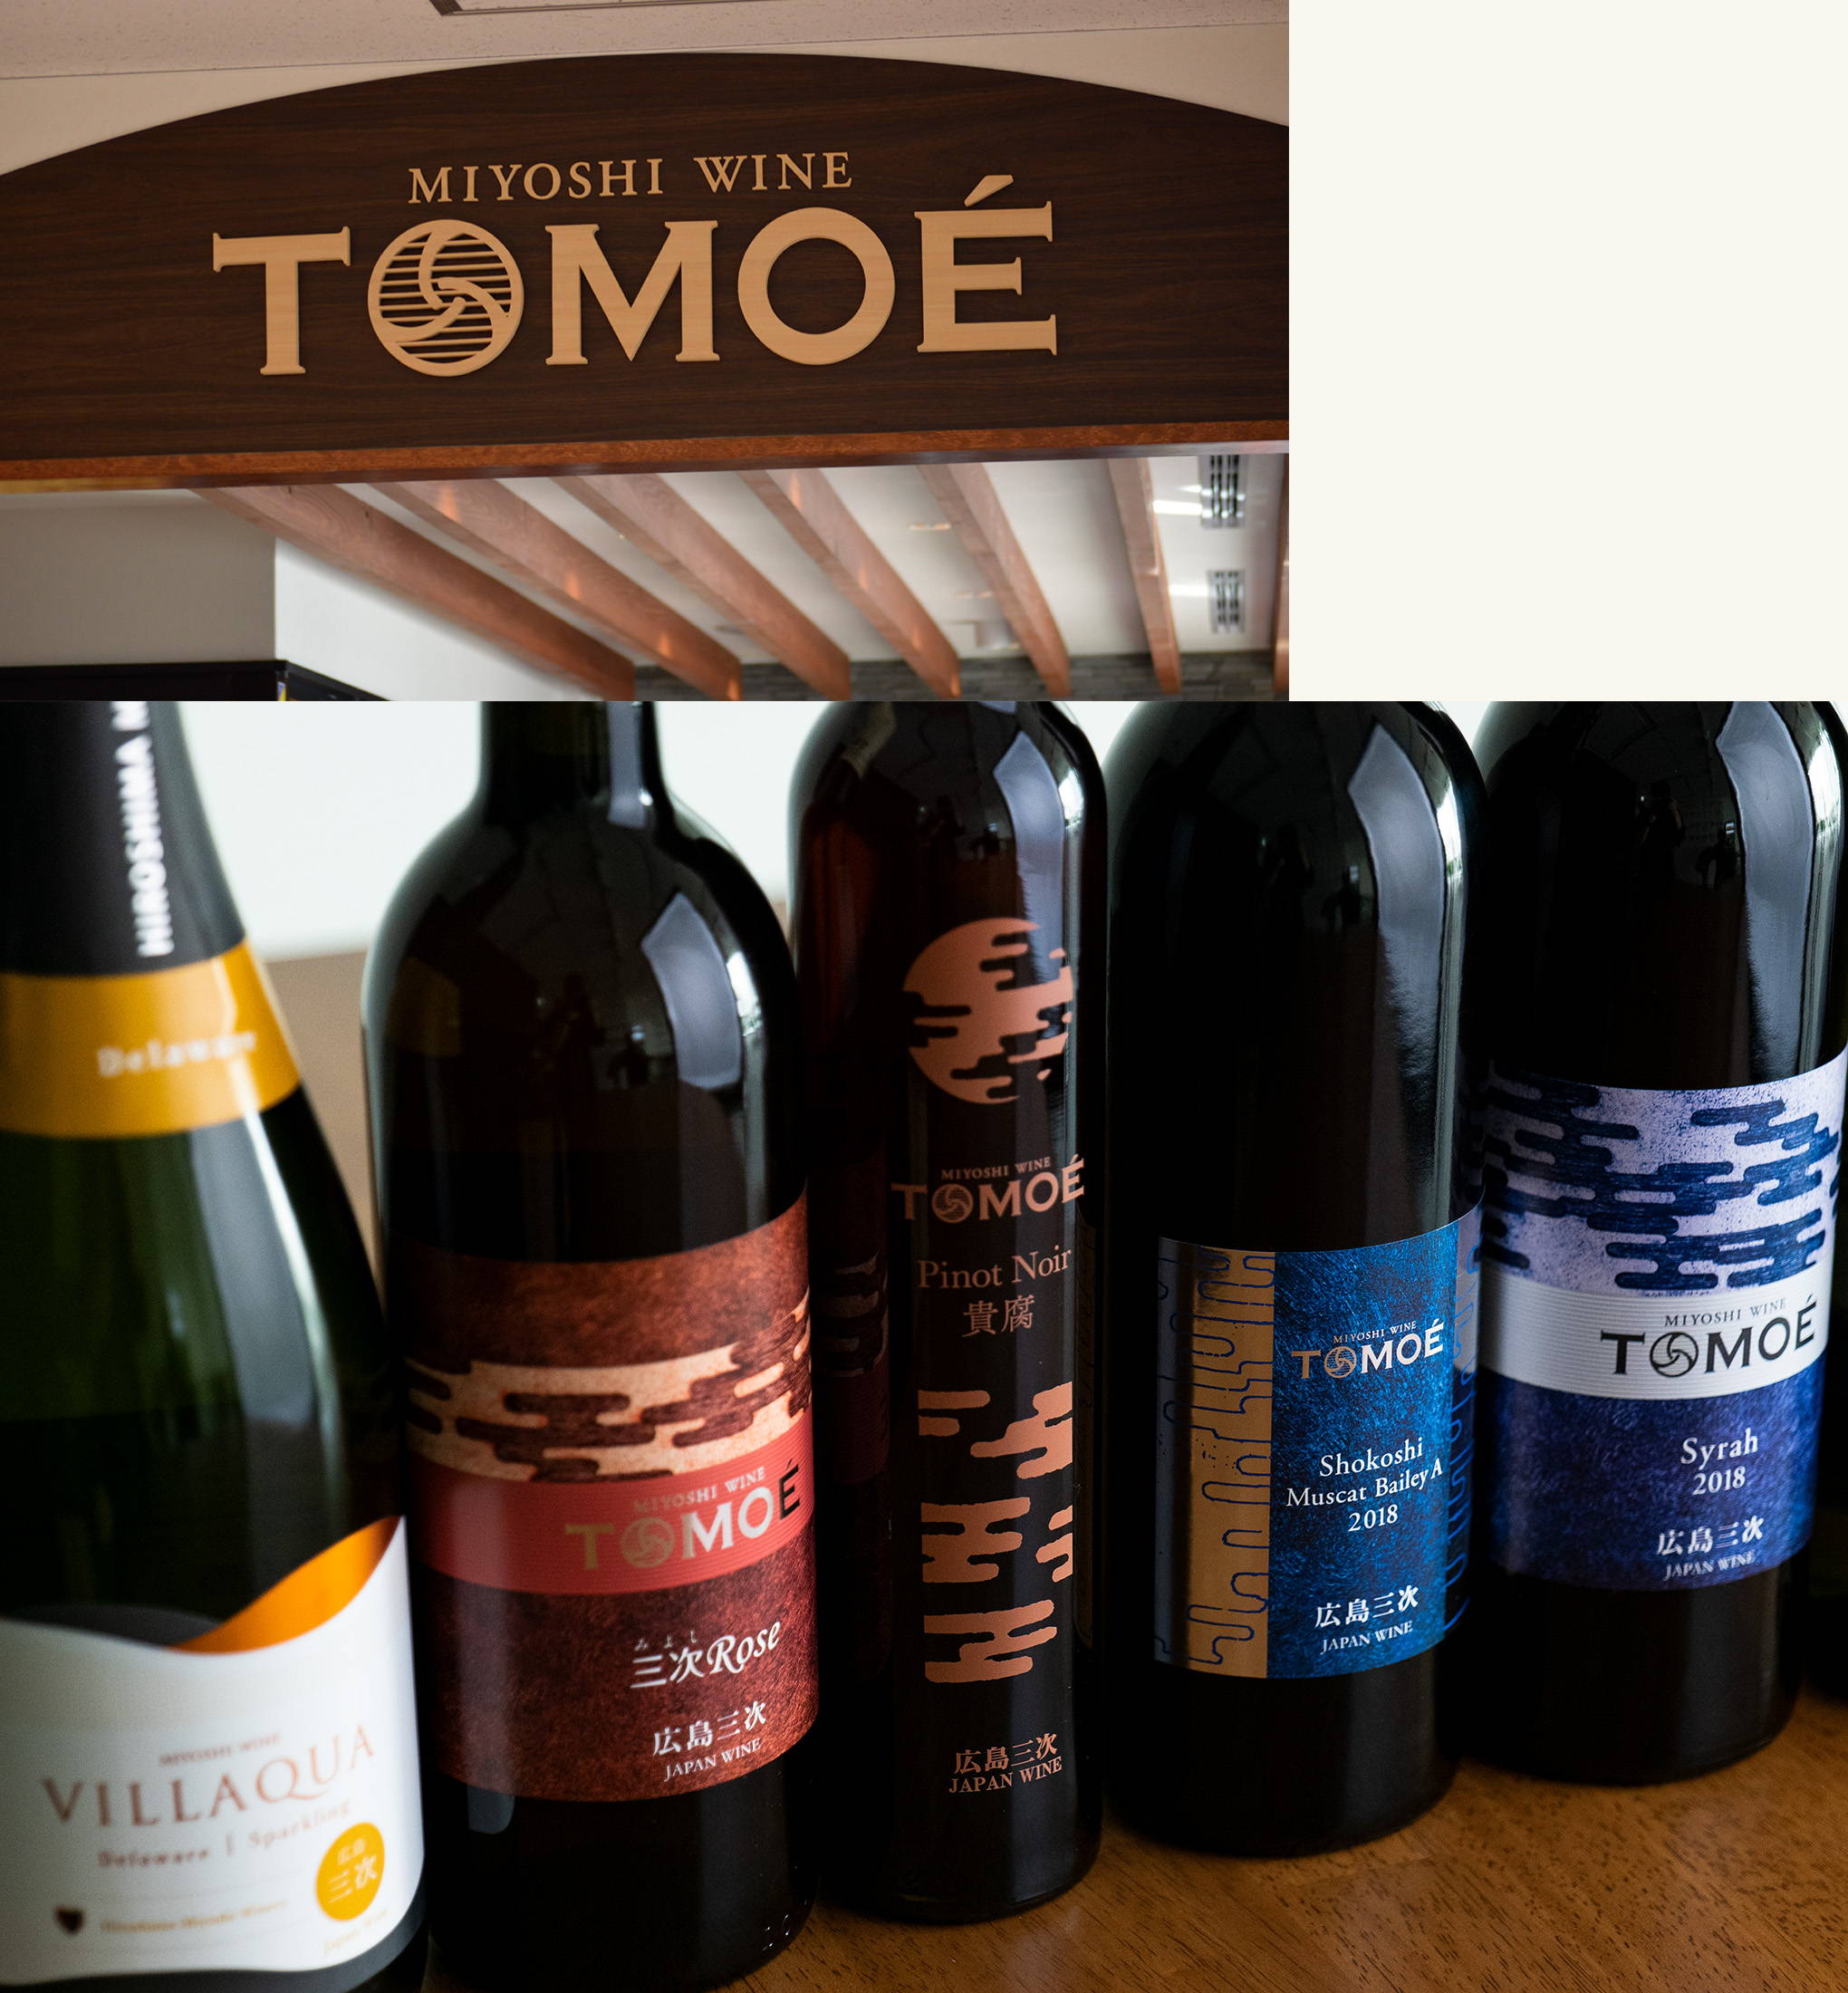 お土産用のワインから、本格的なワイン造りへ。『TOMOÉ(トモエ)』ブランドが遂に誕生！